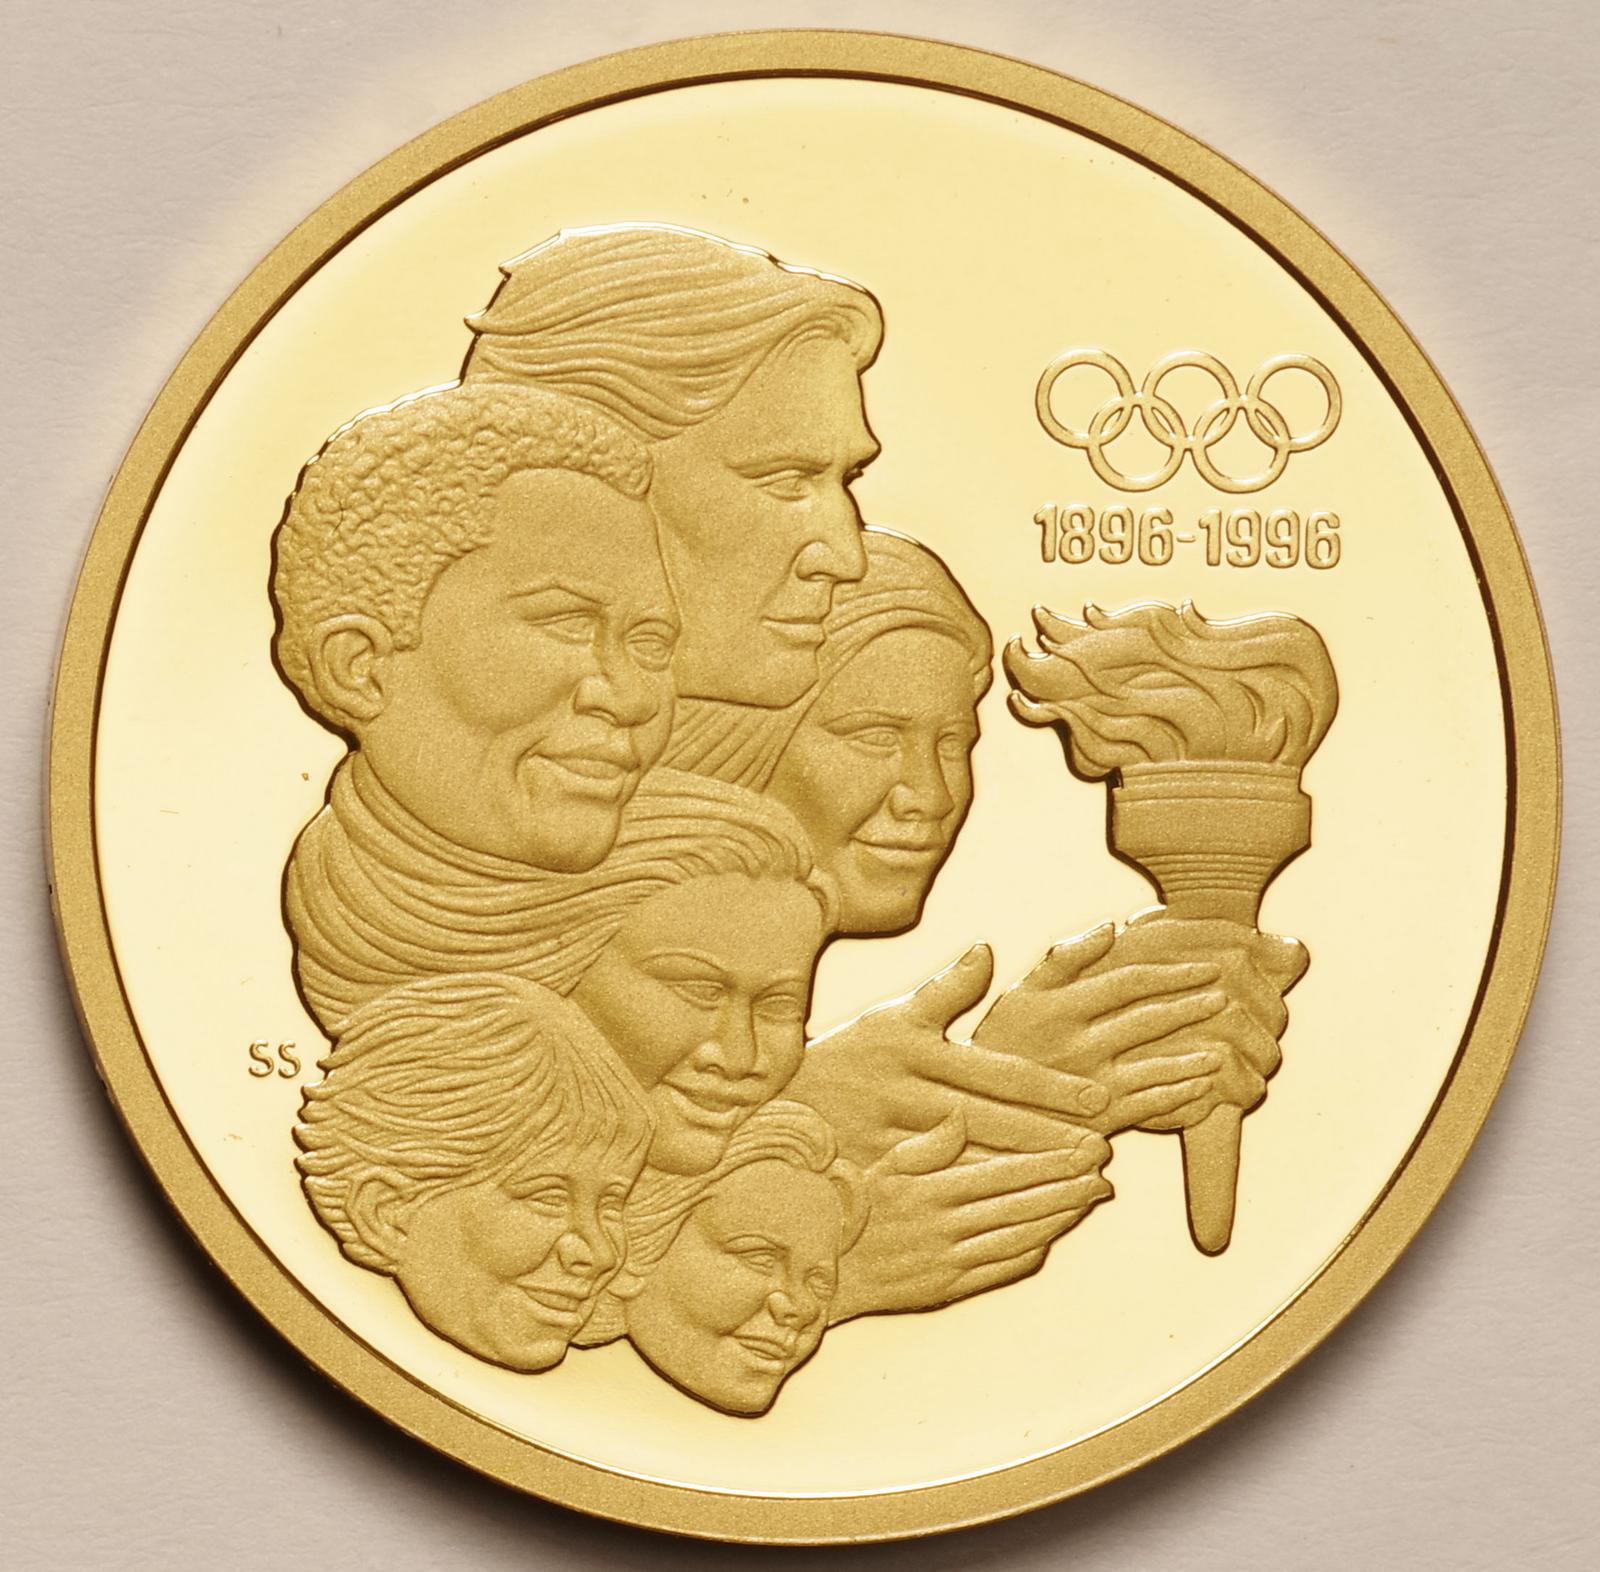 カナダ-Canada オリンピック100周年記念 -聖火受け渡し- 175ドル金貨 